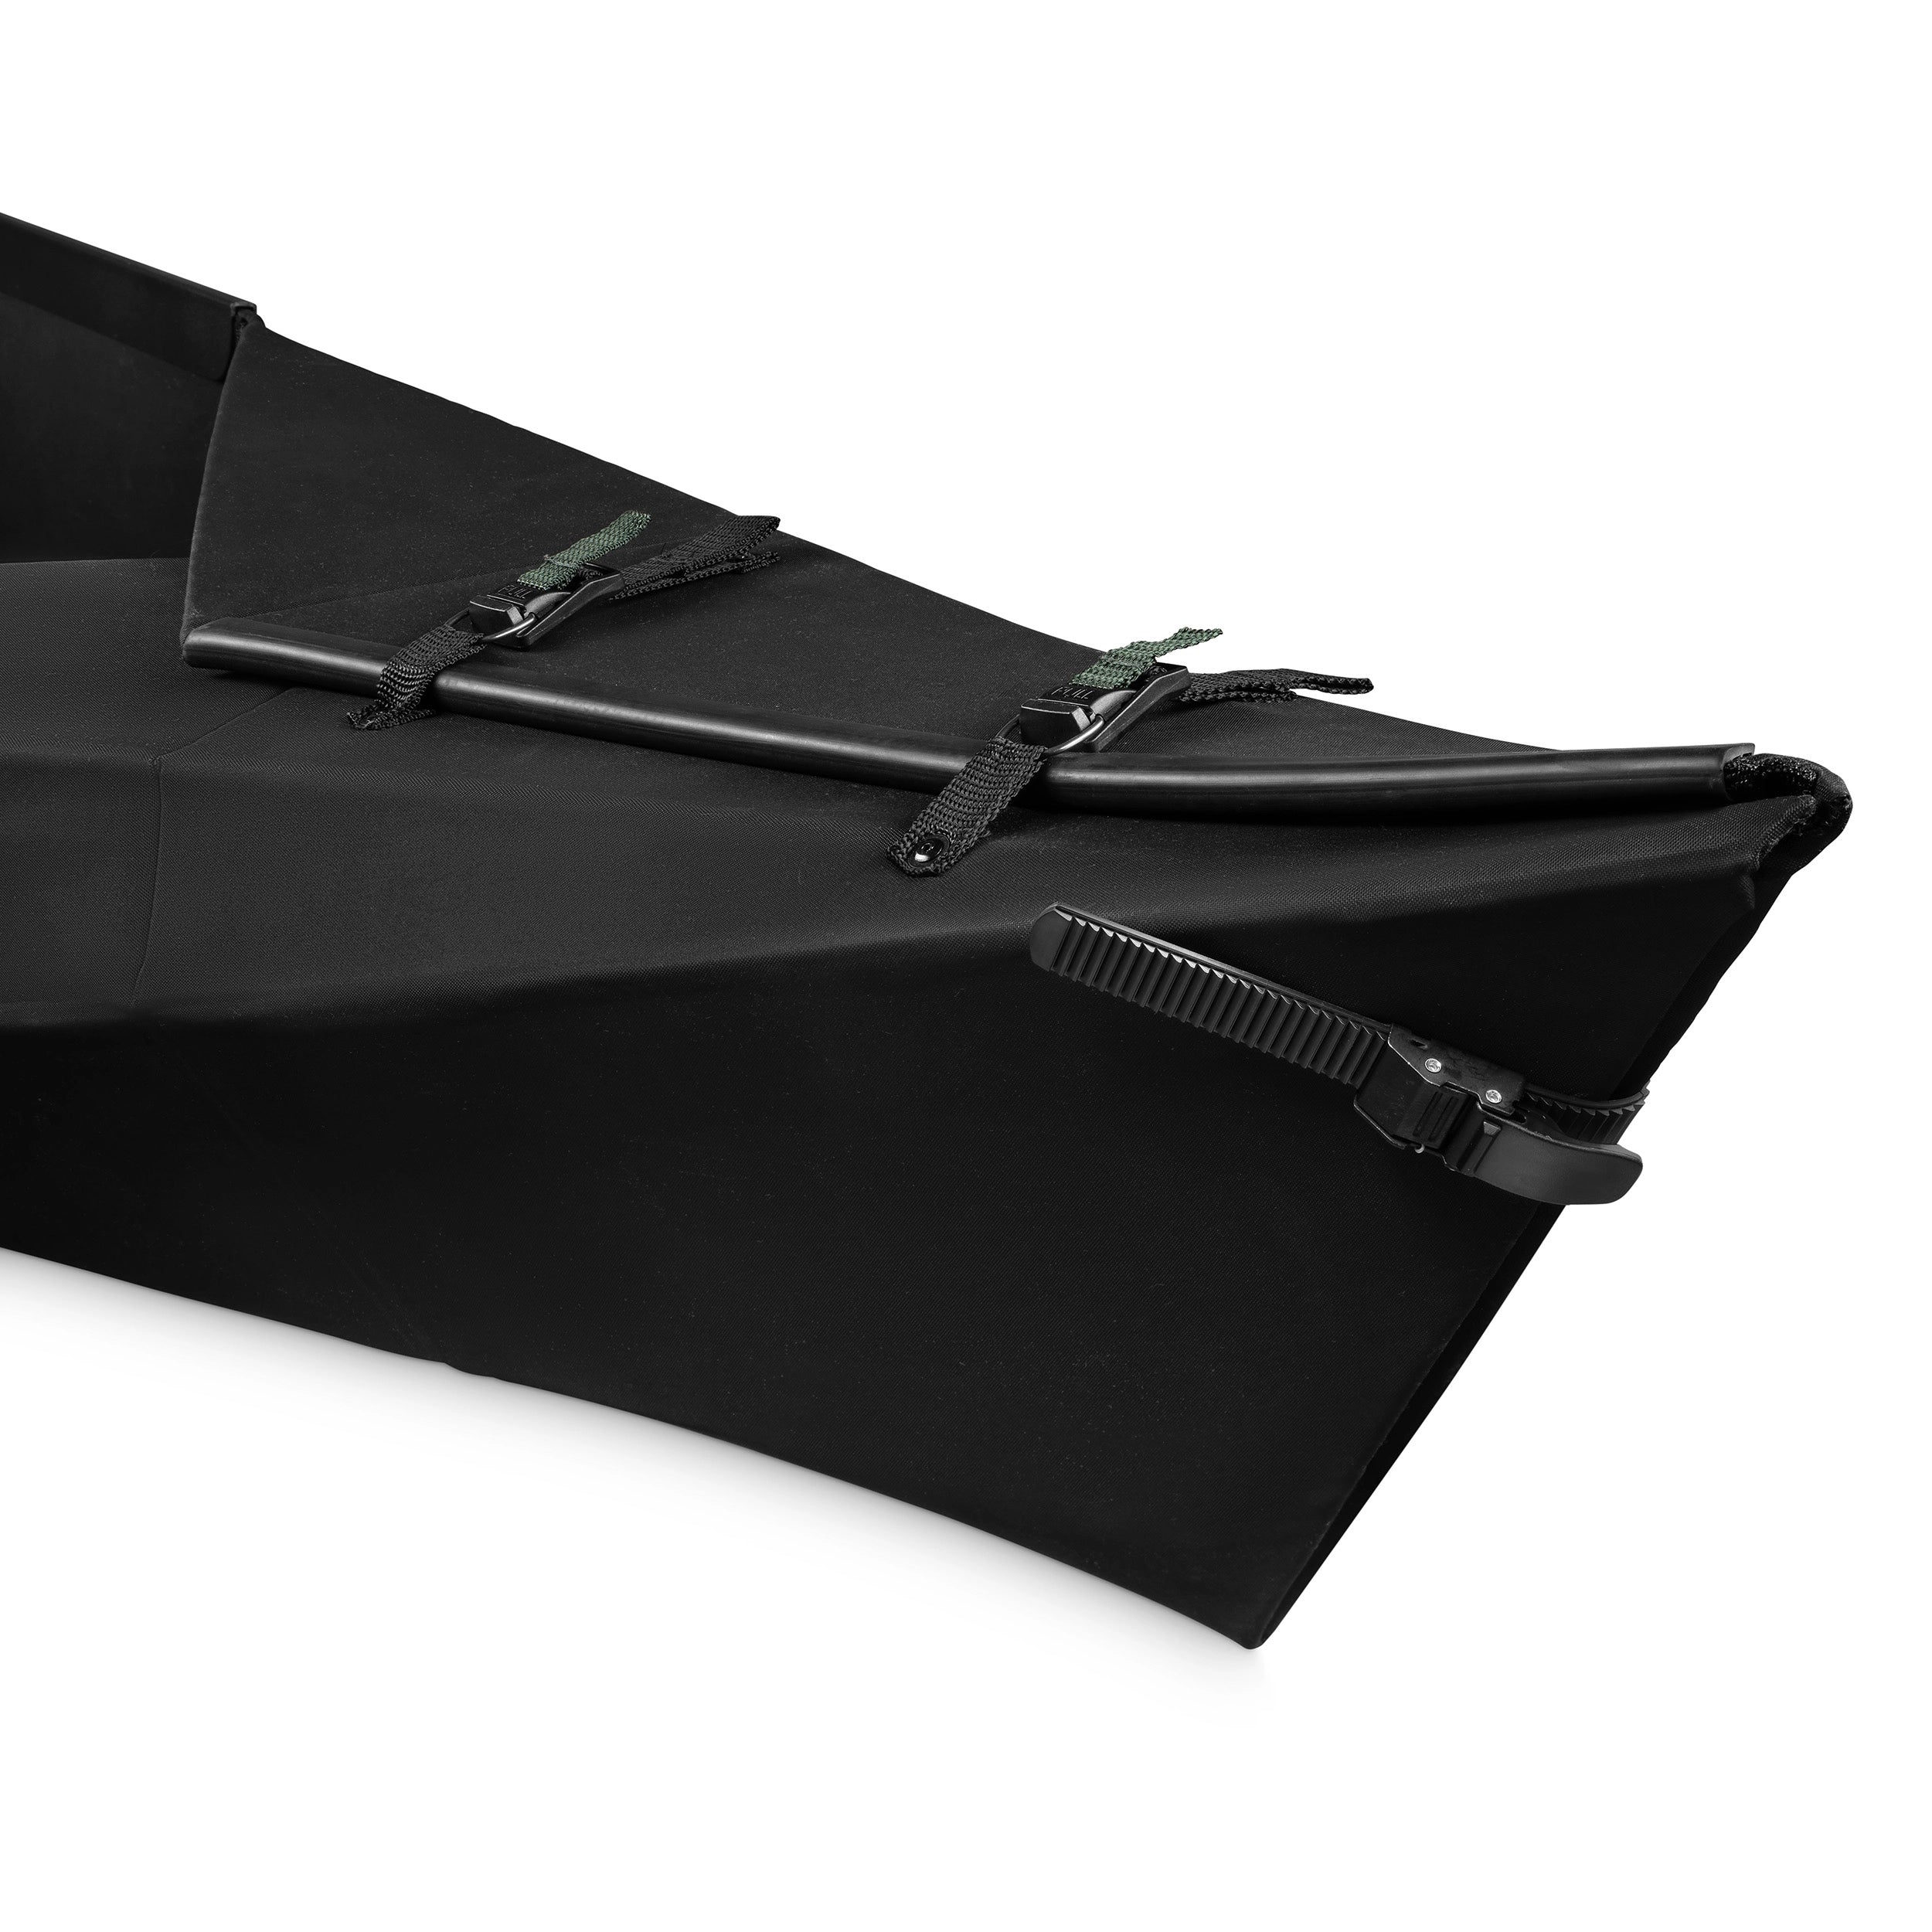 Folding kayak VIK 3.8 black/green